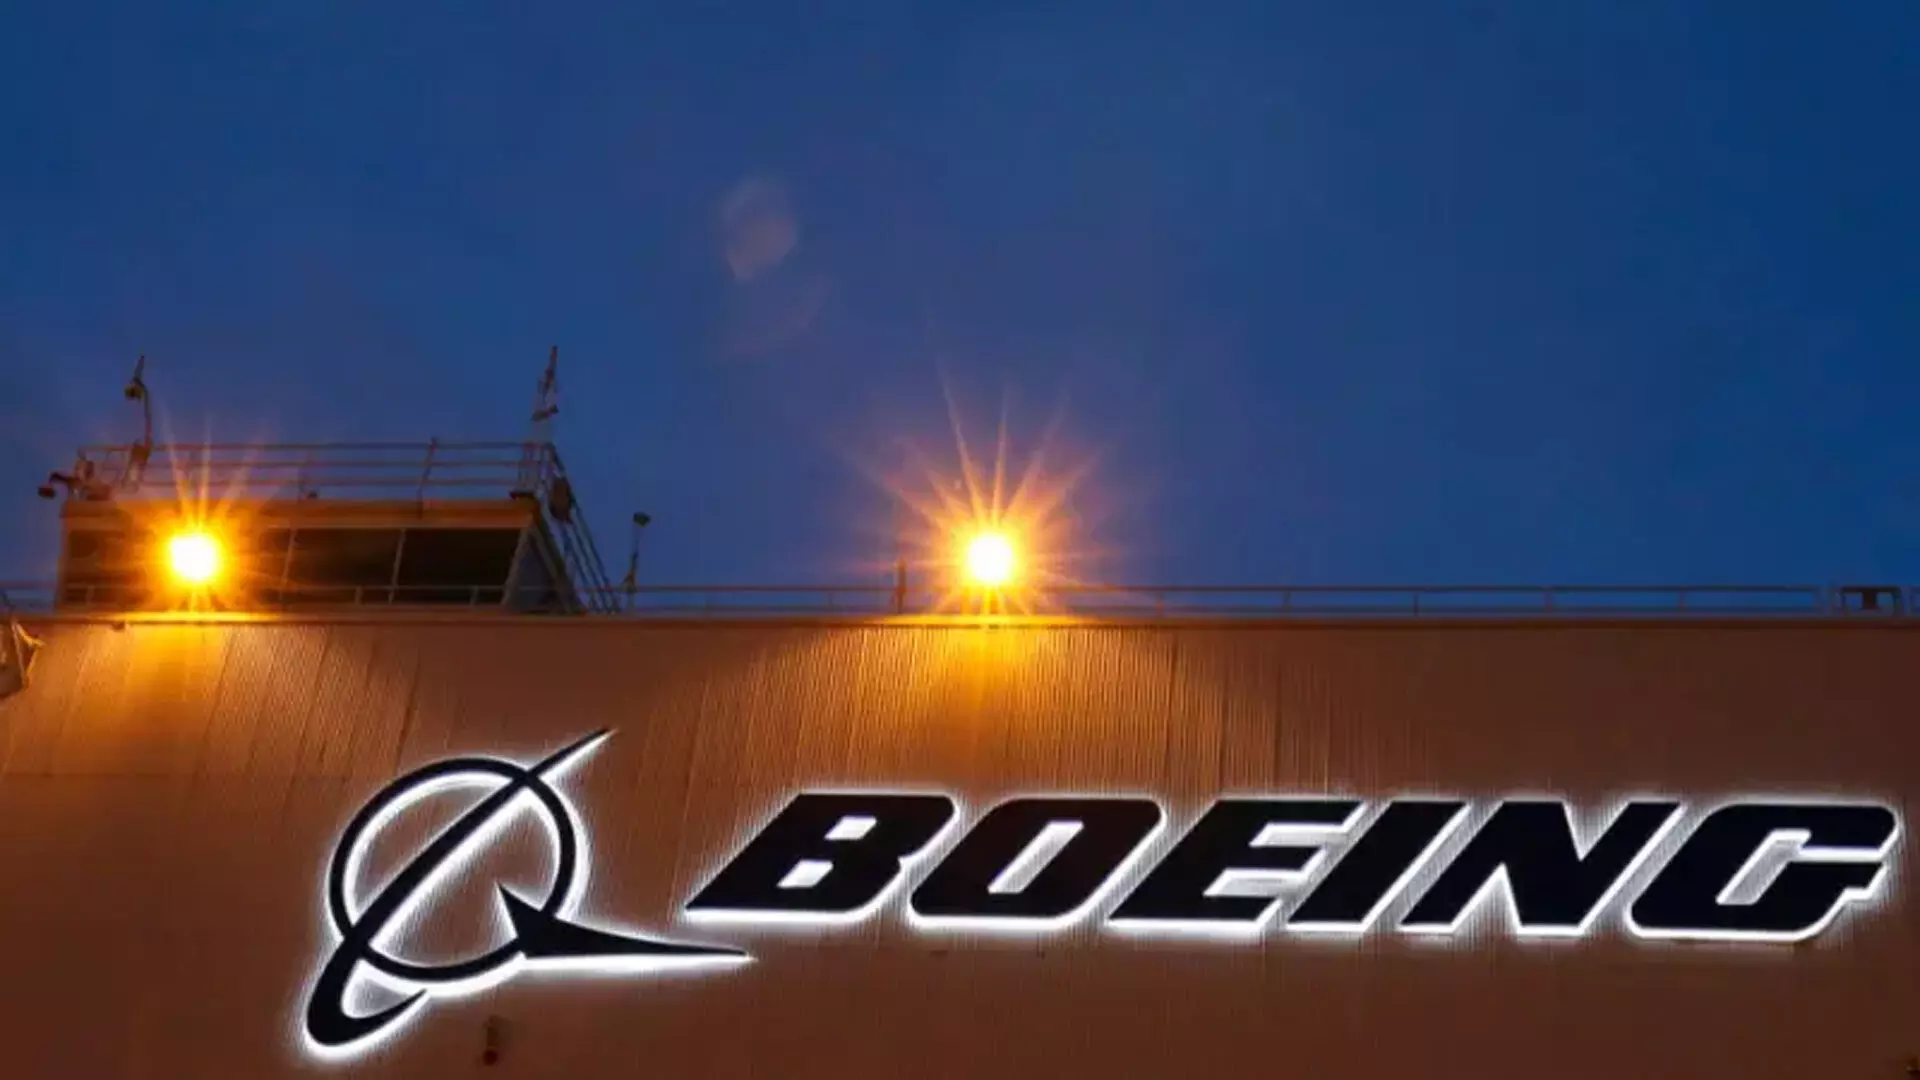 Boeing ने नए सीईओ की नियुक्ति की